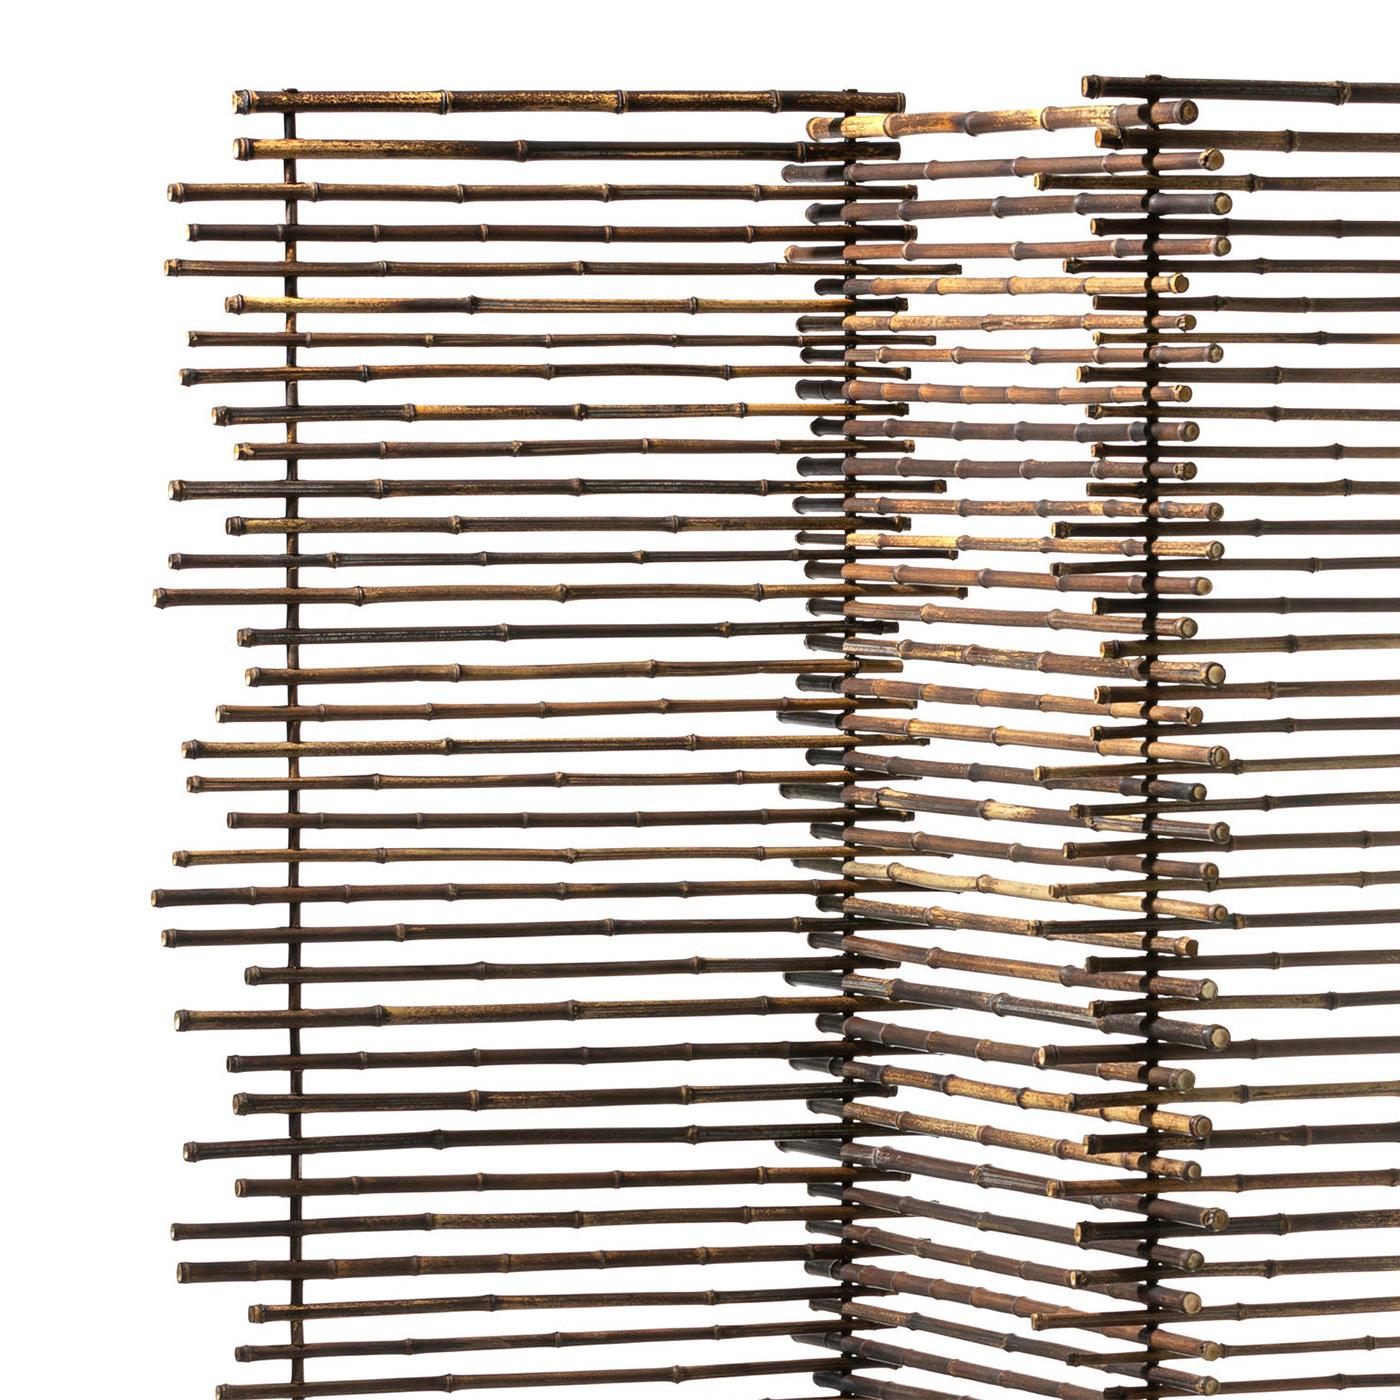 Screen Bamboos mit 3 Foldes
in schwarzem Bambus. Jedes gefaltete Teil ist L60cmxH180cm groß.
Gesamtabmessungen: L175xT60xH180cm.